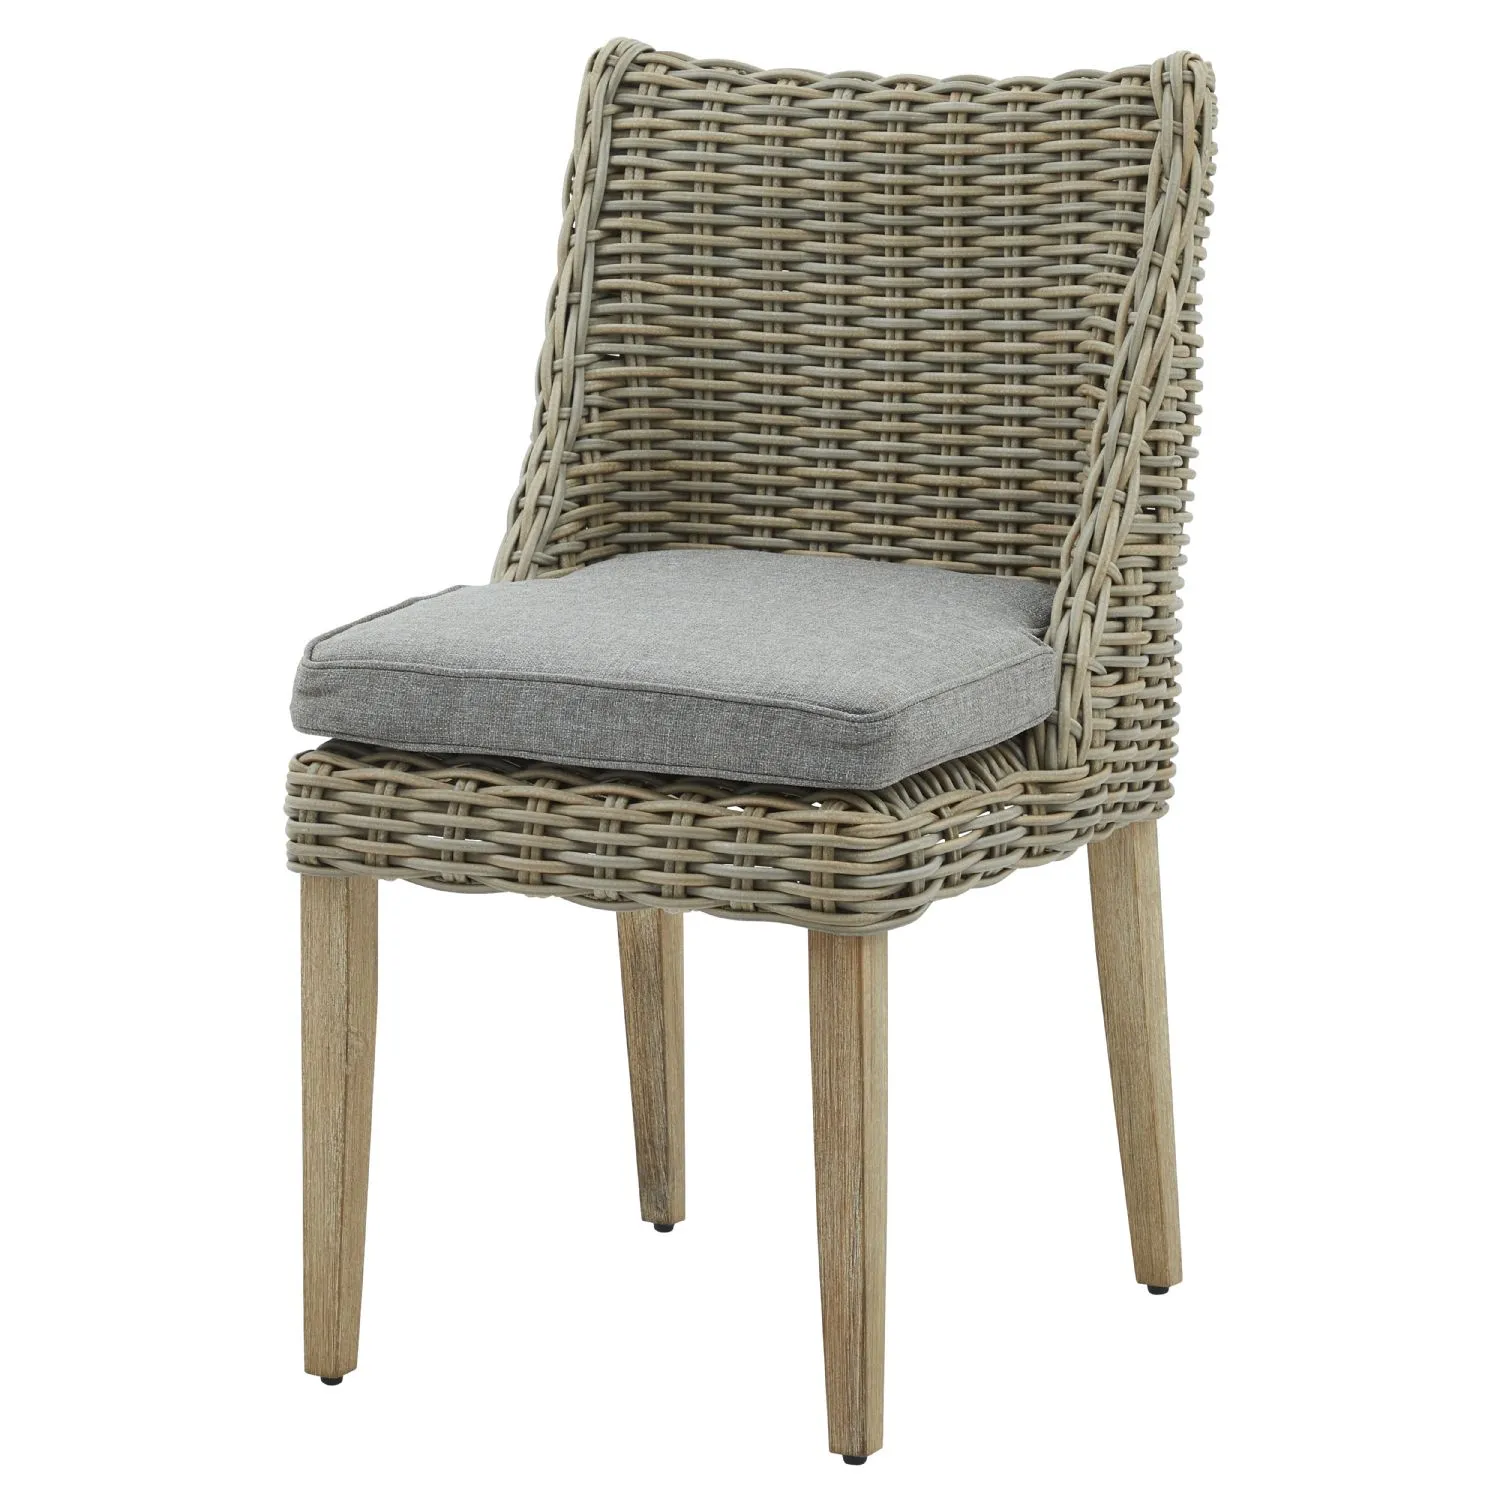 Beige Rattan Outdoor Round Dining Chair